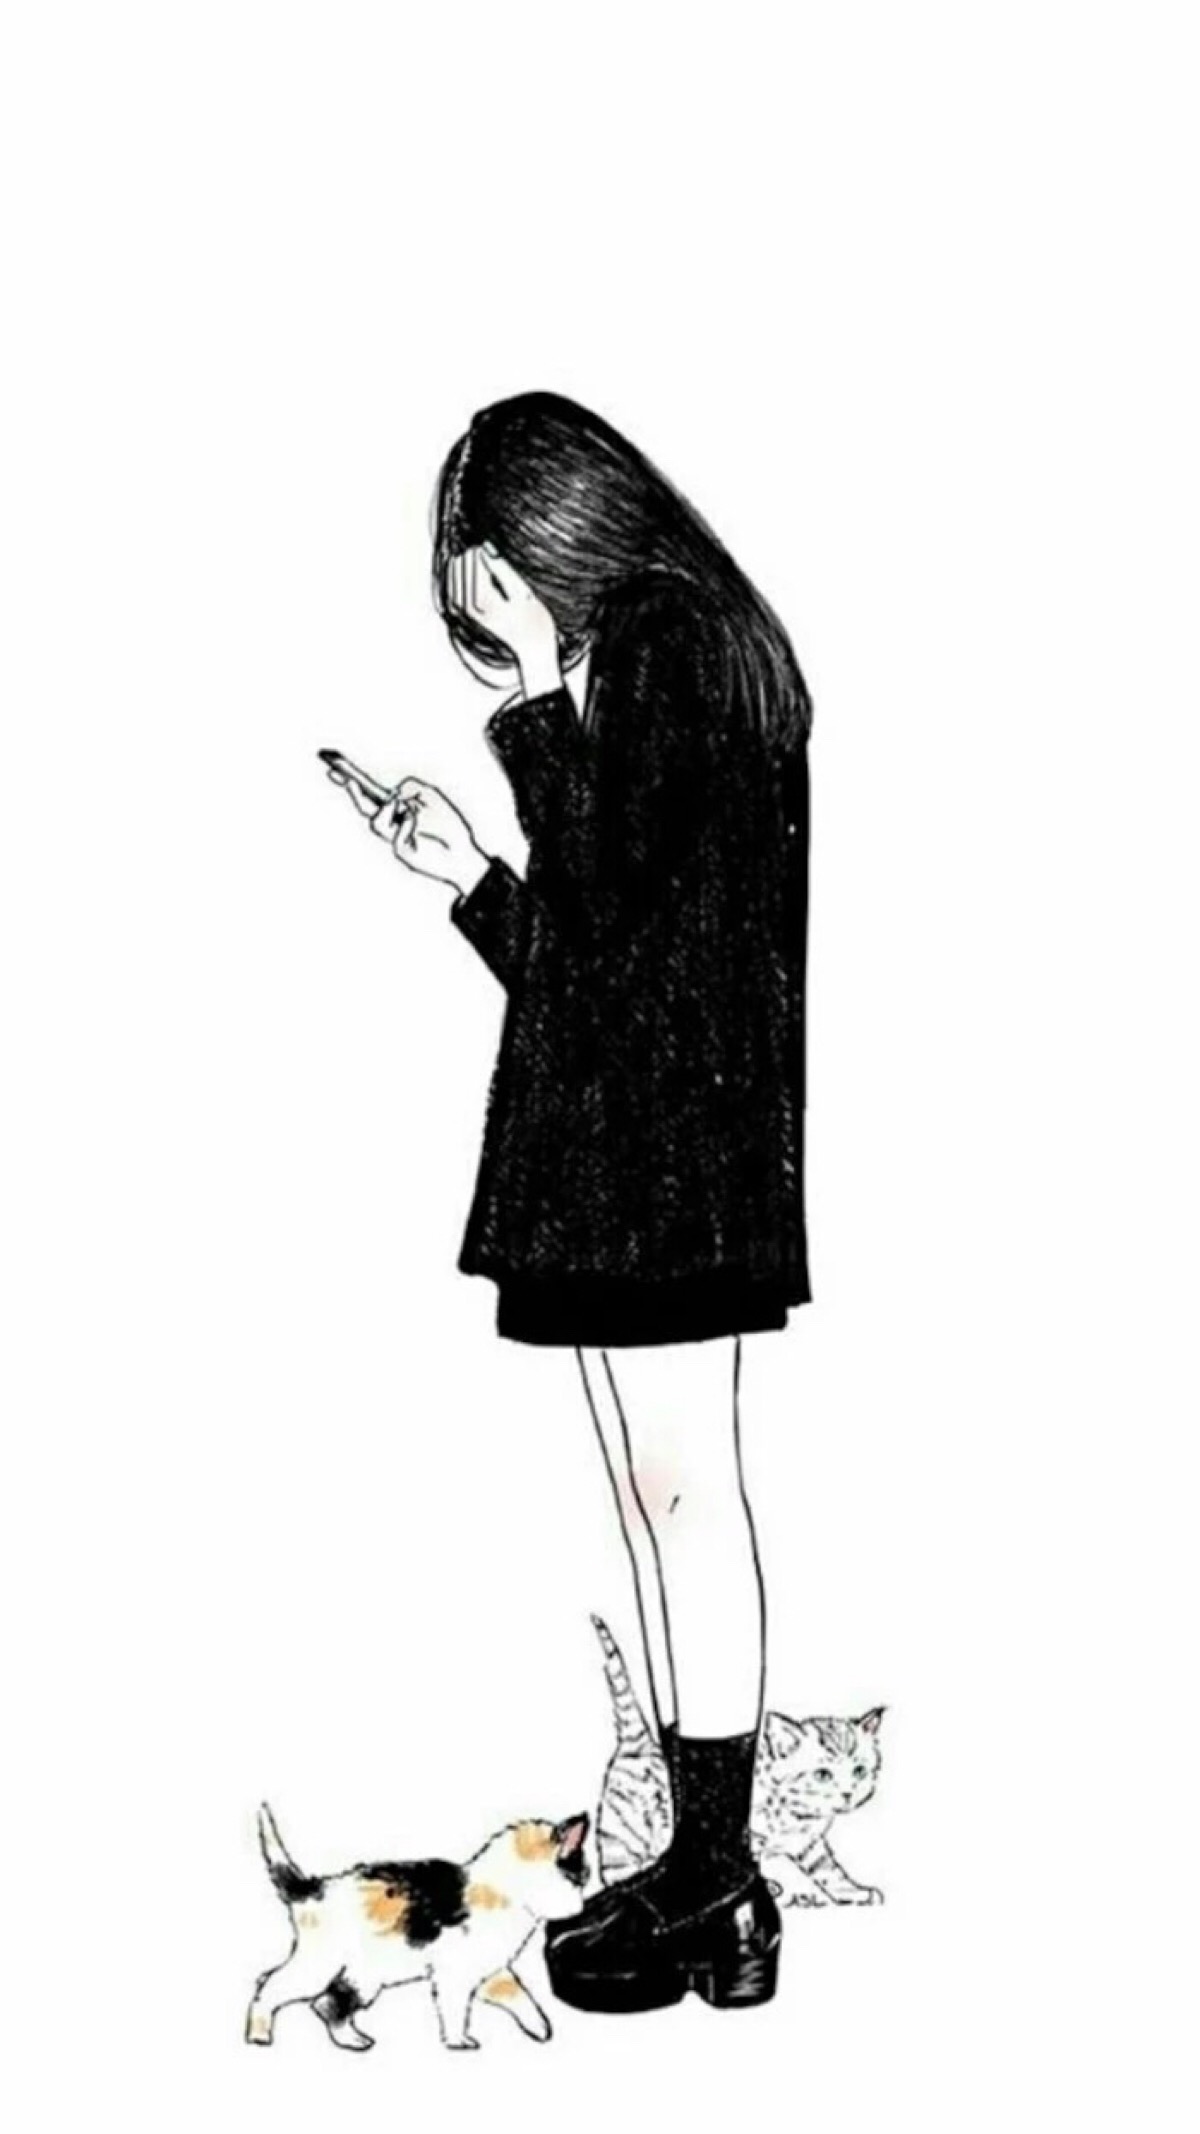 插画 长发女孩 简约 文艺 清新 自然 唯美 黑白系 头像 手机壁纸 聊天